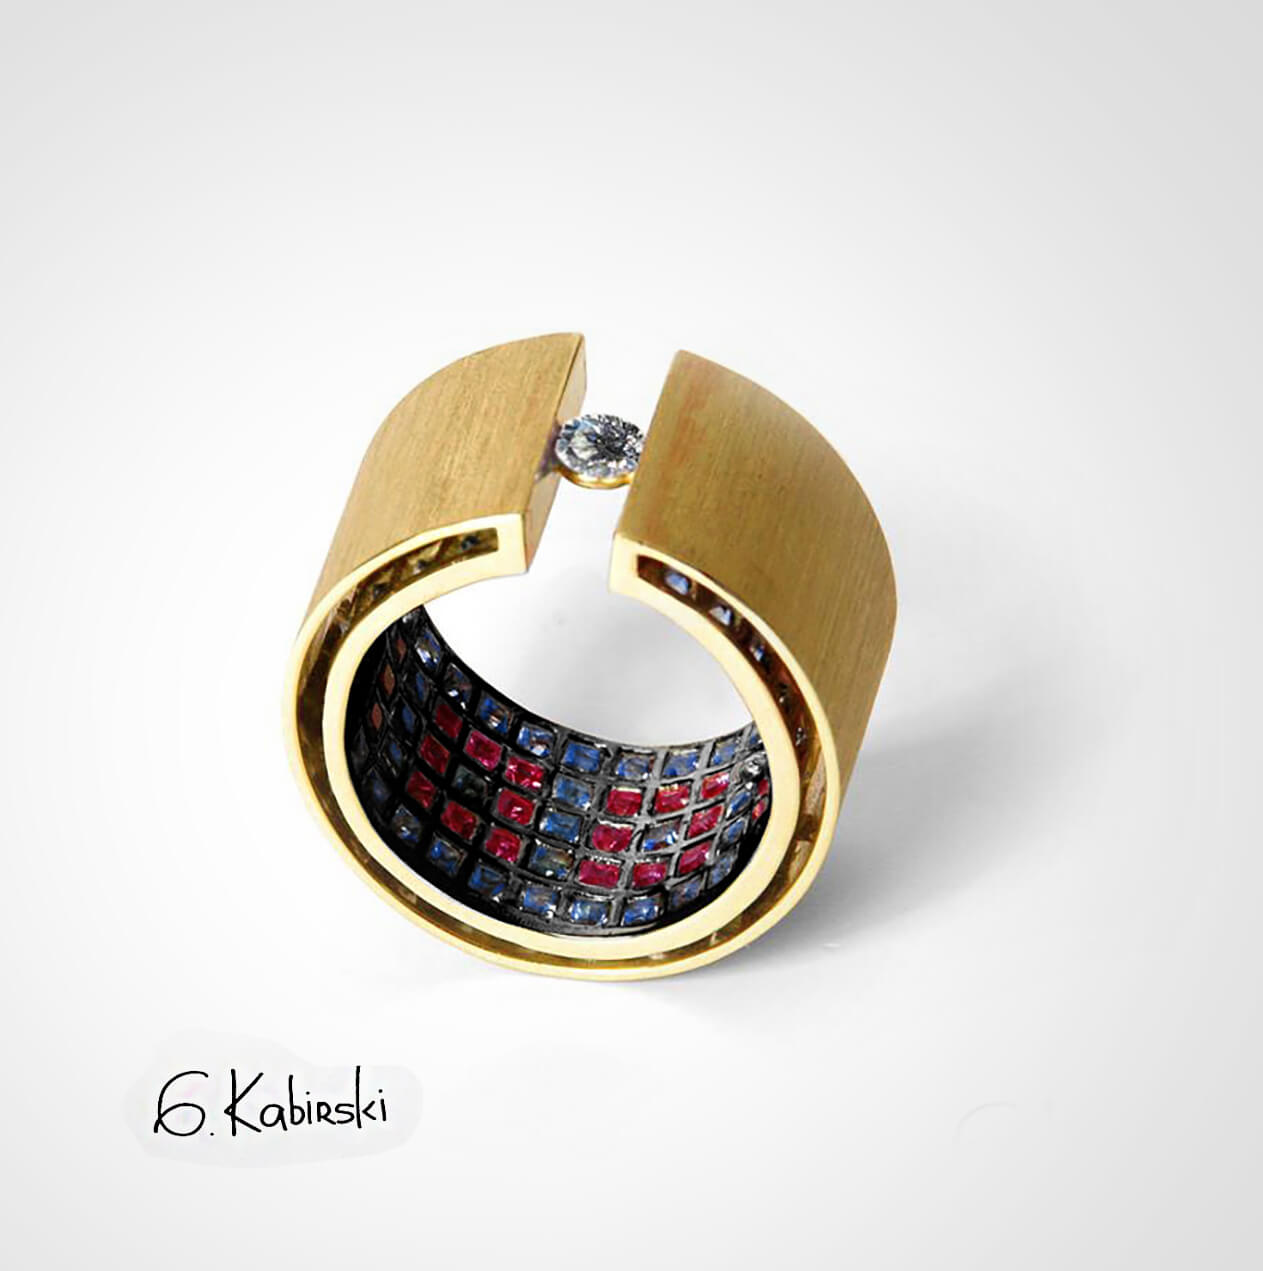 german kabirski ring